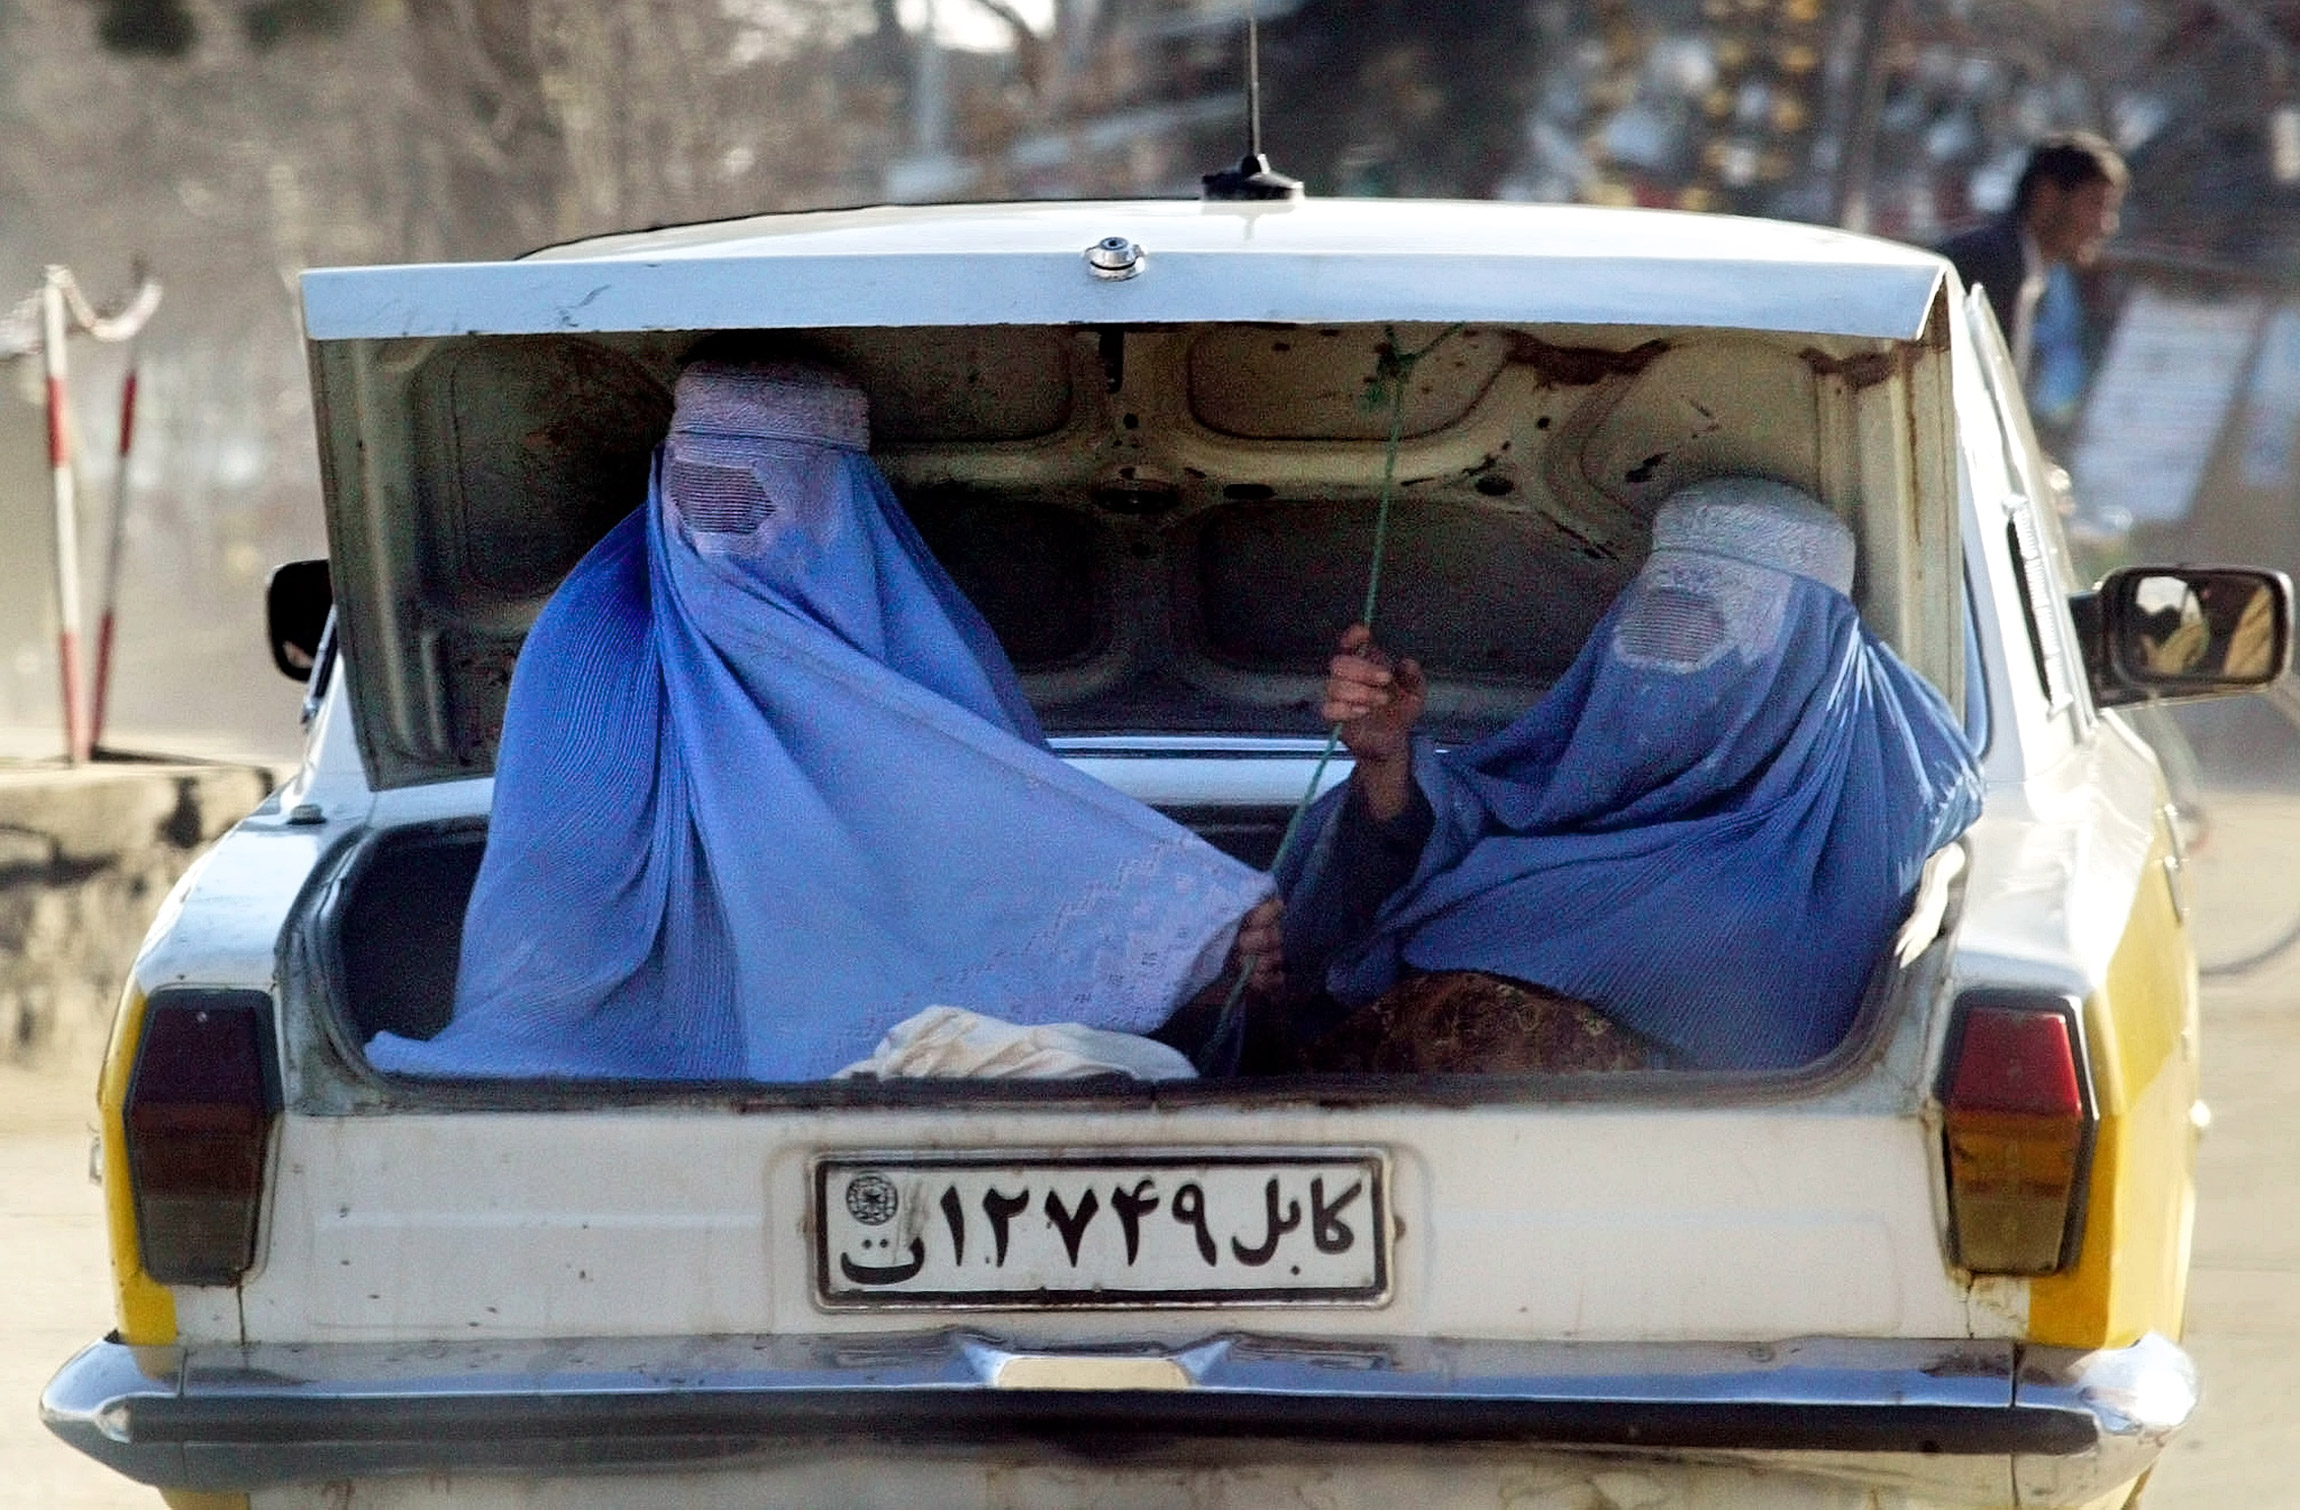 <p>Бурка стала символом притеснения. После свержения талибов в 2001 году в результате военных операций Великобритании и США в Афганистане многие афганские женщины отказались от этого одеяния, хотя некоторые из них продолжили носить его, отдавая дань религии и традициям</p>